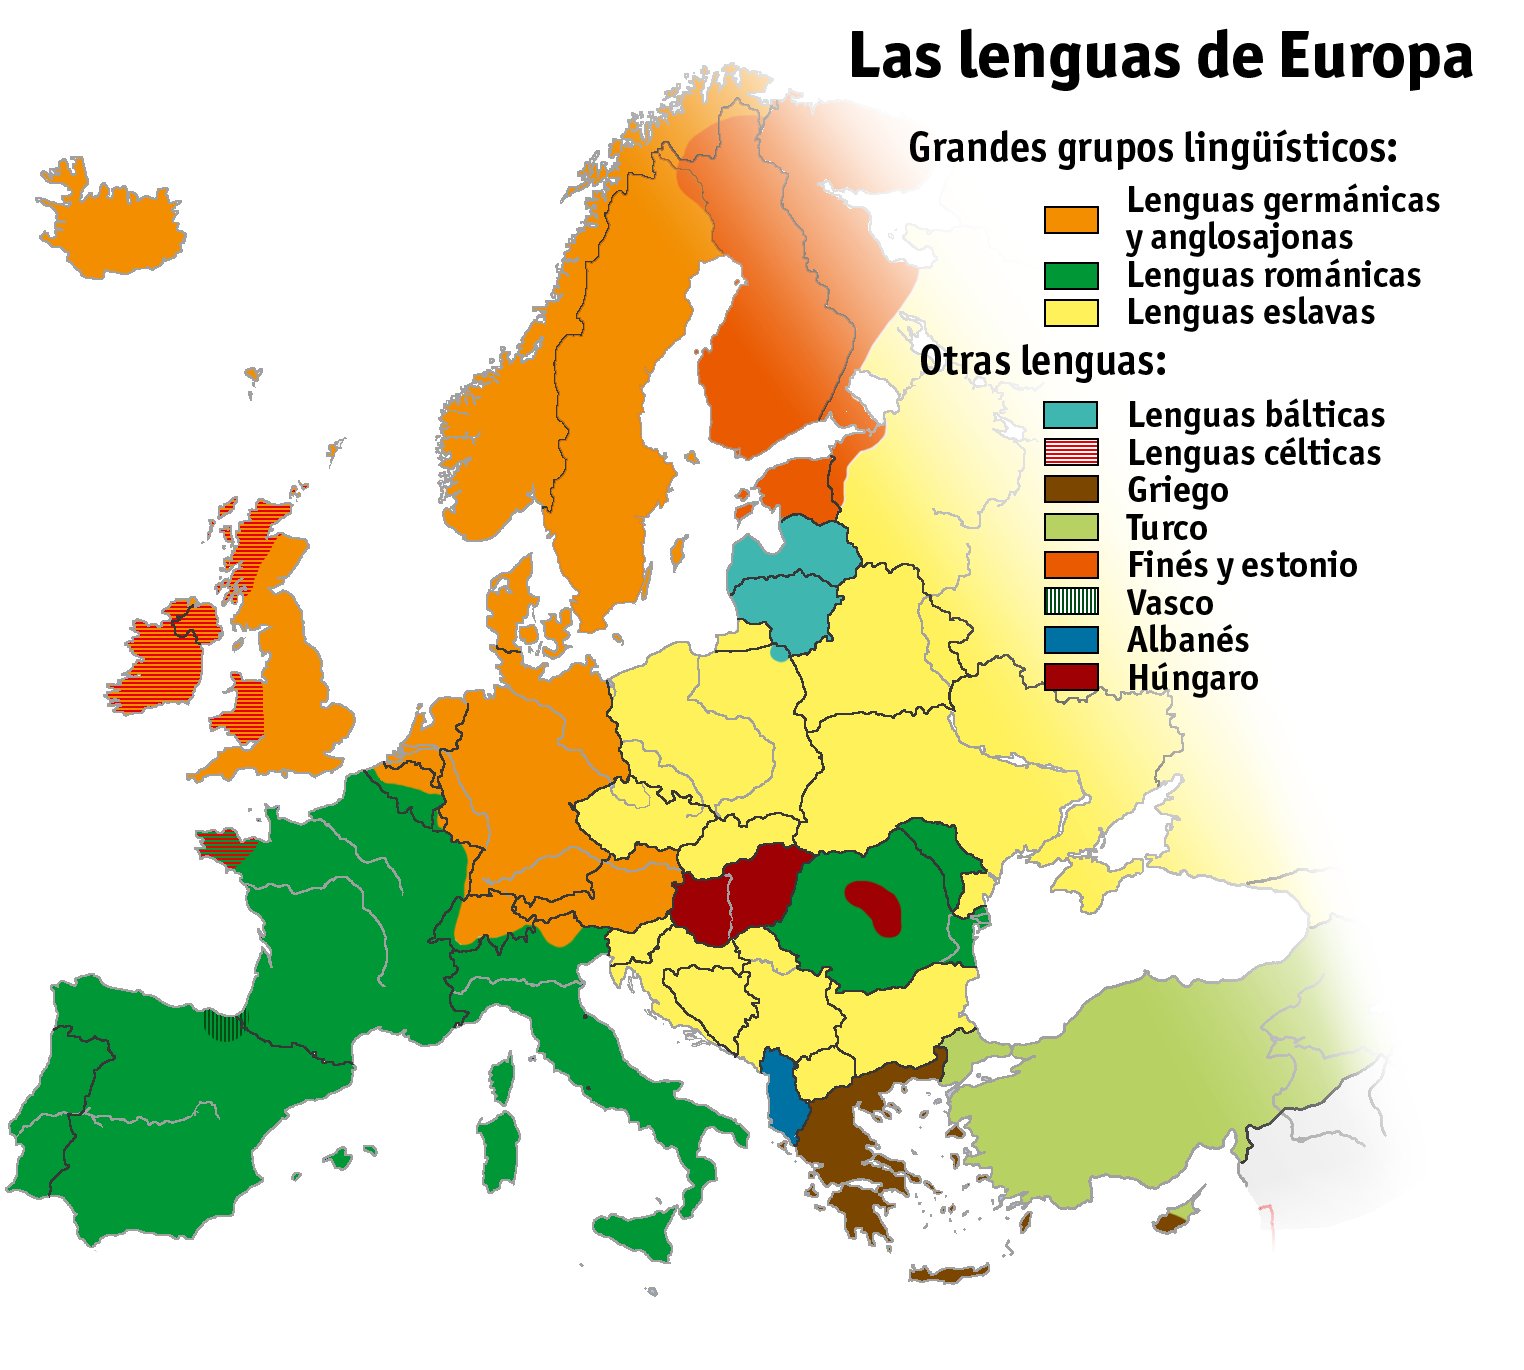 http://www.zonu.com/images/0X0/2009-12-22-11440/Las-lenguas-de-Europa.png